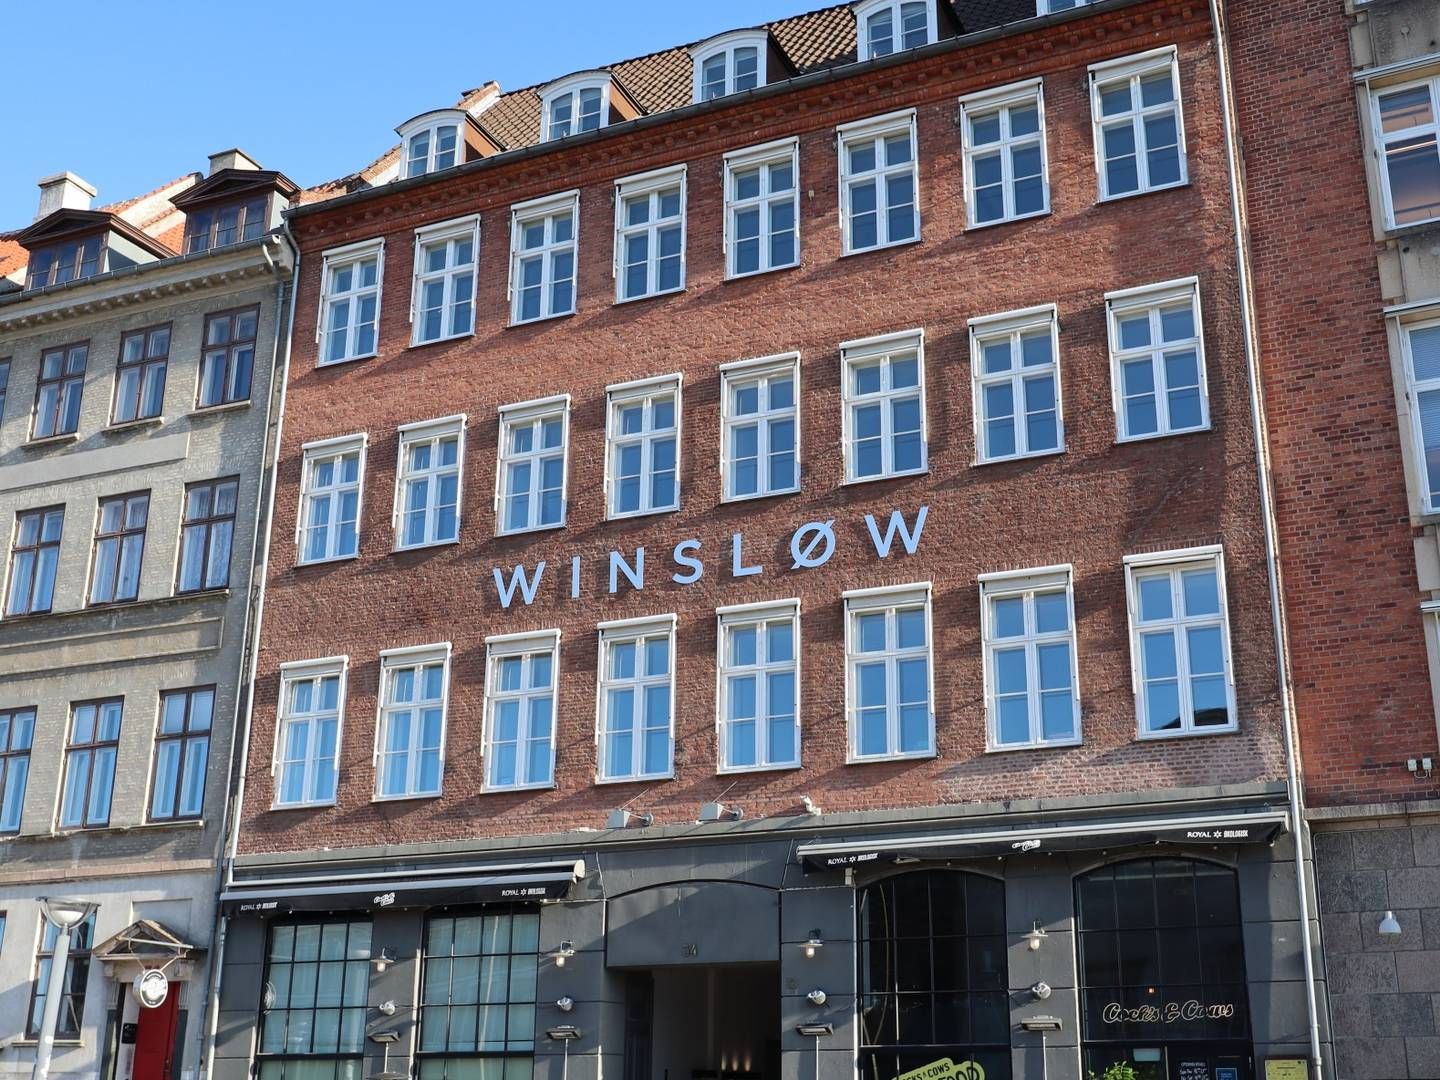 Ejendomsadvokaterne i Winsløw holder til her på Gammel Strand i København. | Foto: Winsløw / Pr